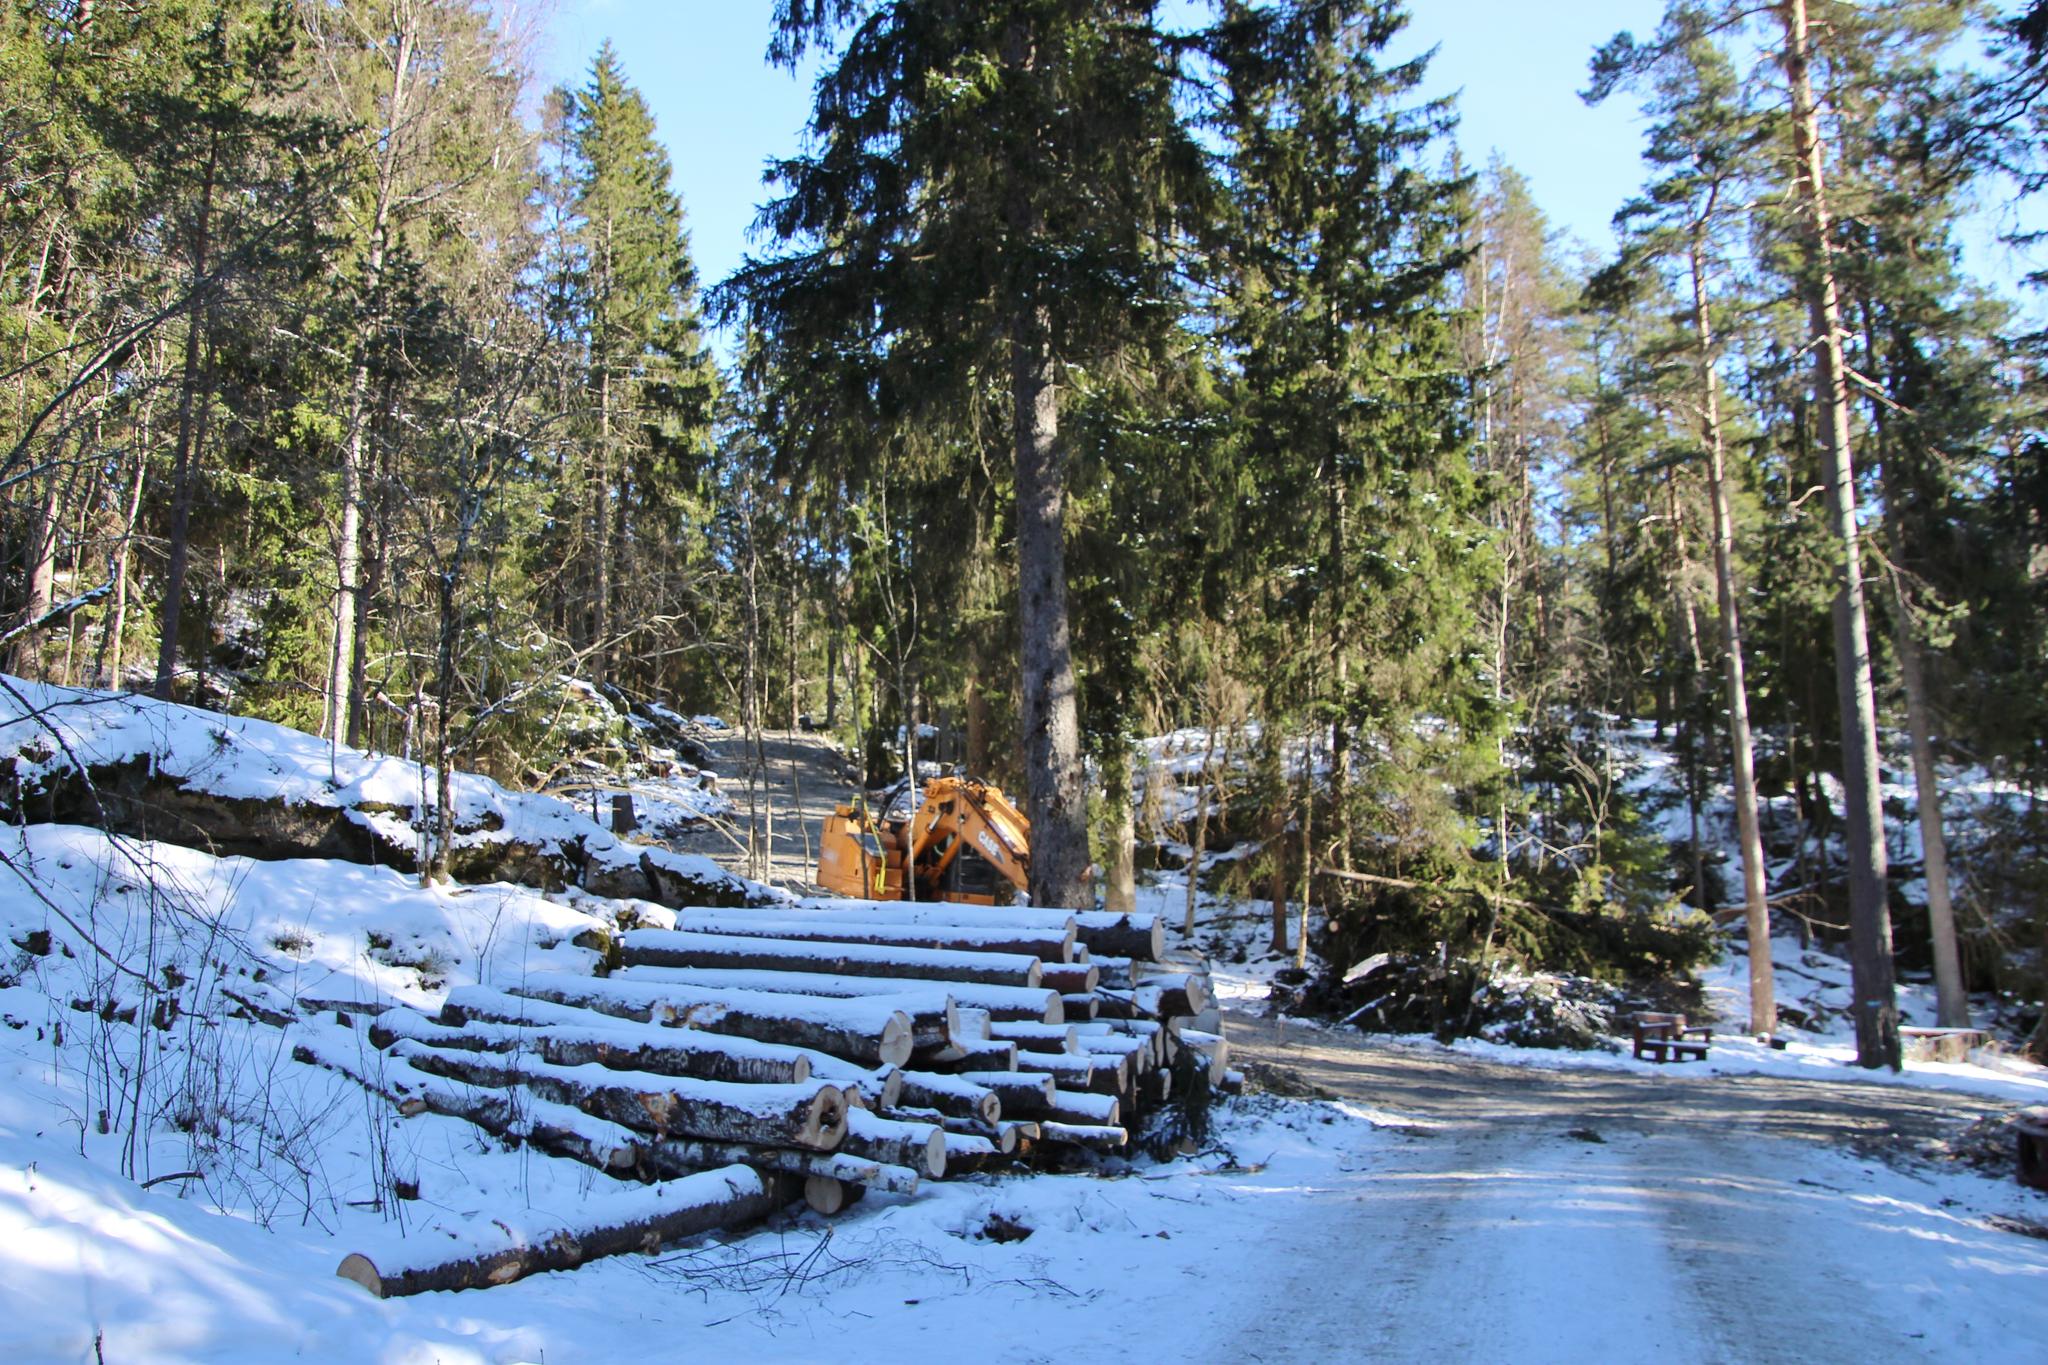 Byggingen av veien har pågått i flere dager, bekrefter Bymiljøetaten.